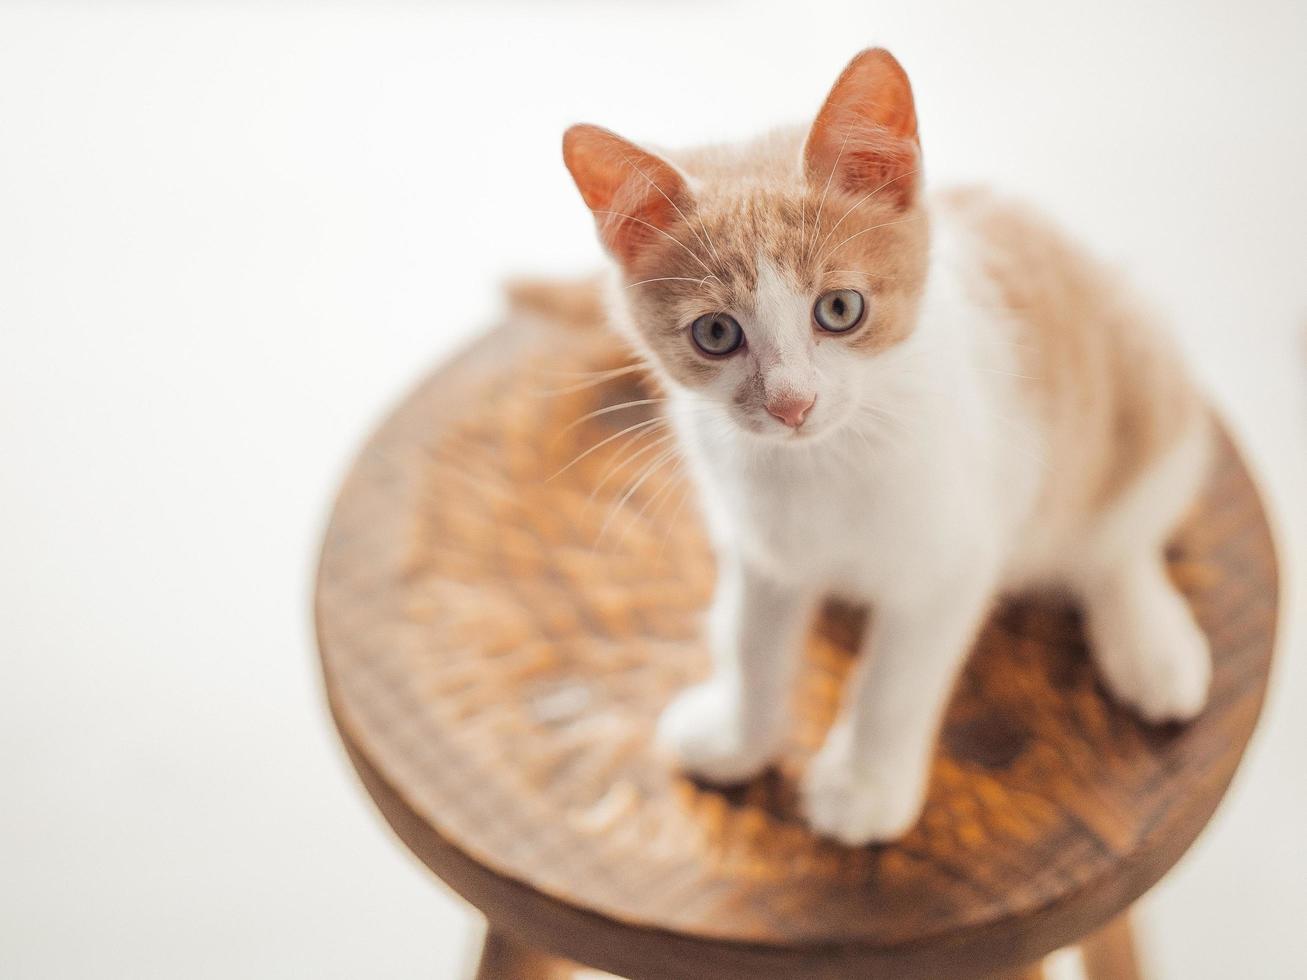 Gatito joven con hermosos ojos azules se sienta en una silla de madera foto